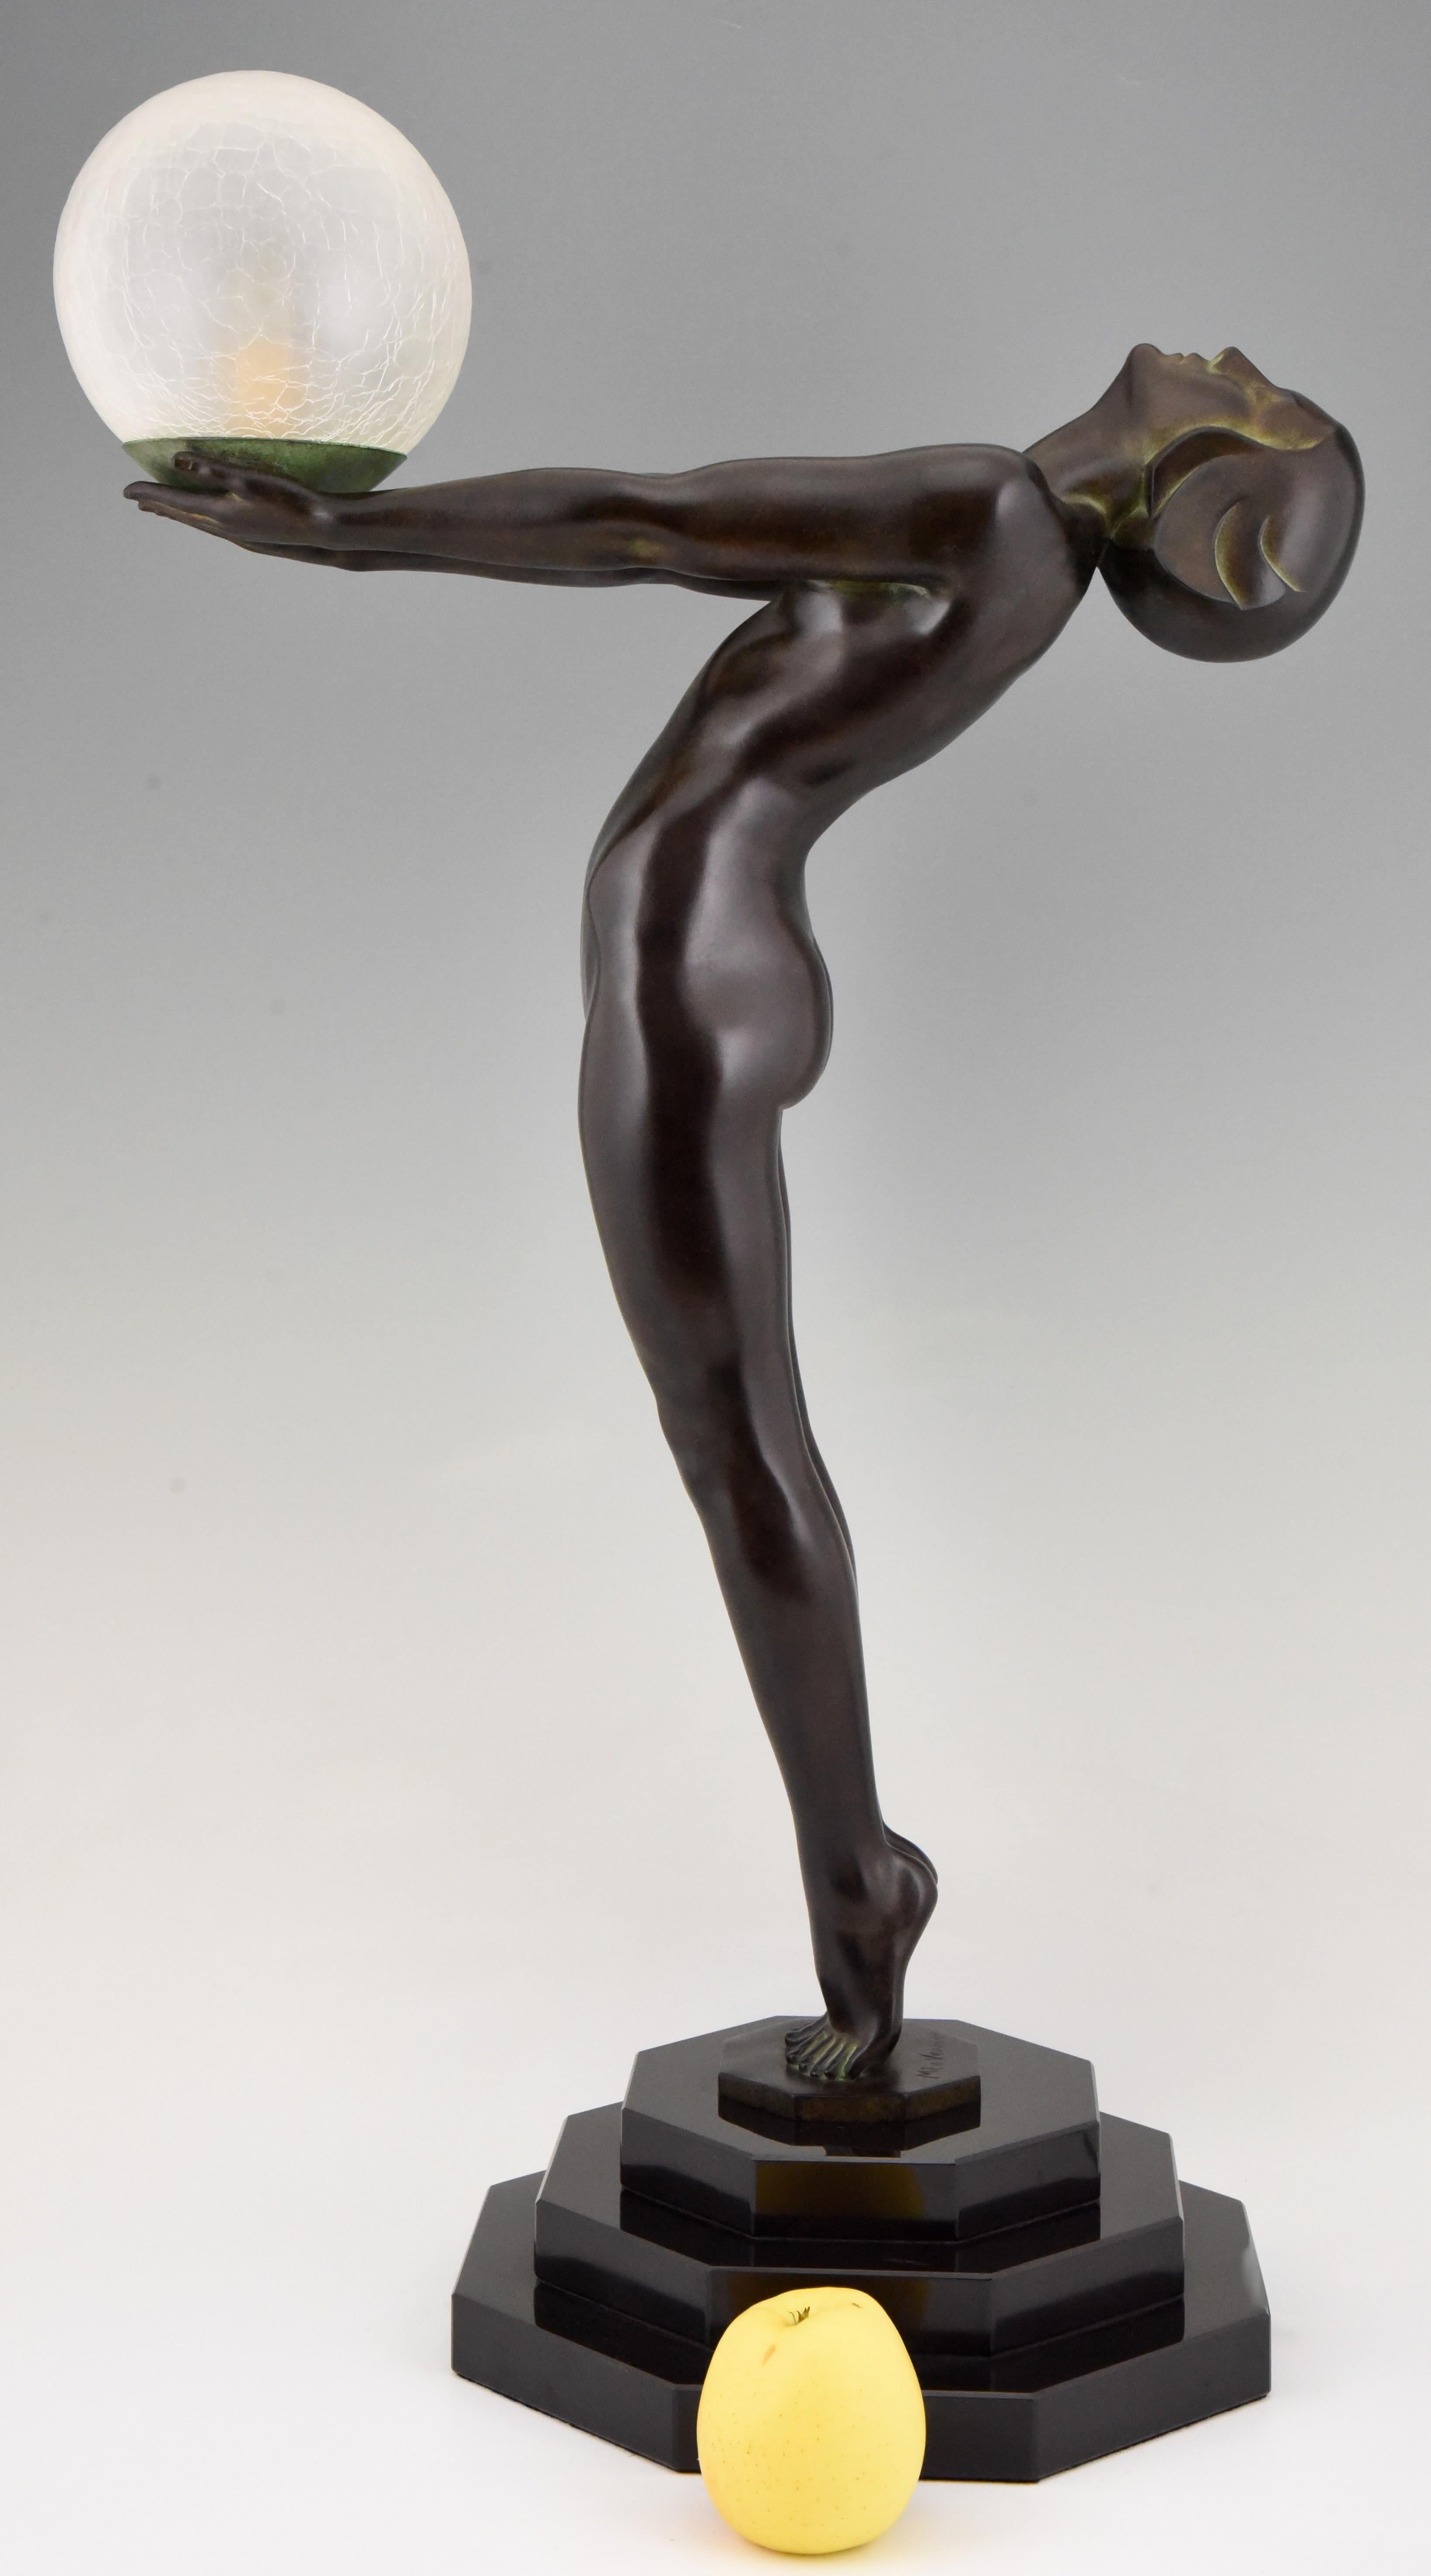 Clarté, ikonische 84 cm / 33 inch hohe figurale Tischlampe im Art Deco Style mit einem stehenden Akt, der einen Glasschirm hält, von Max Le Verrier mit Gießereiprägung.
Entworfen im Jahr 1928.
Posthumer zeitgenössischer Abguss in der Gießerei Max Le